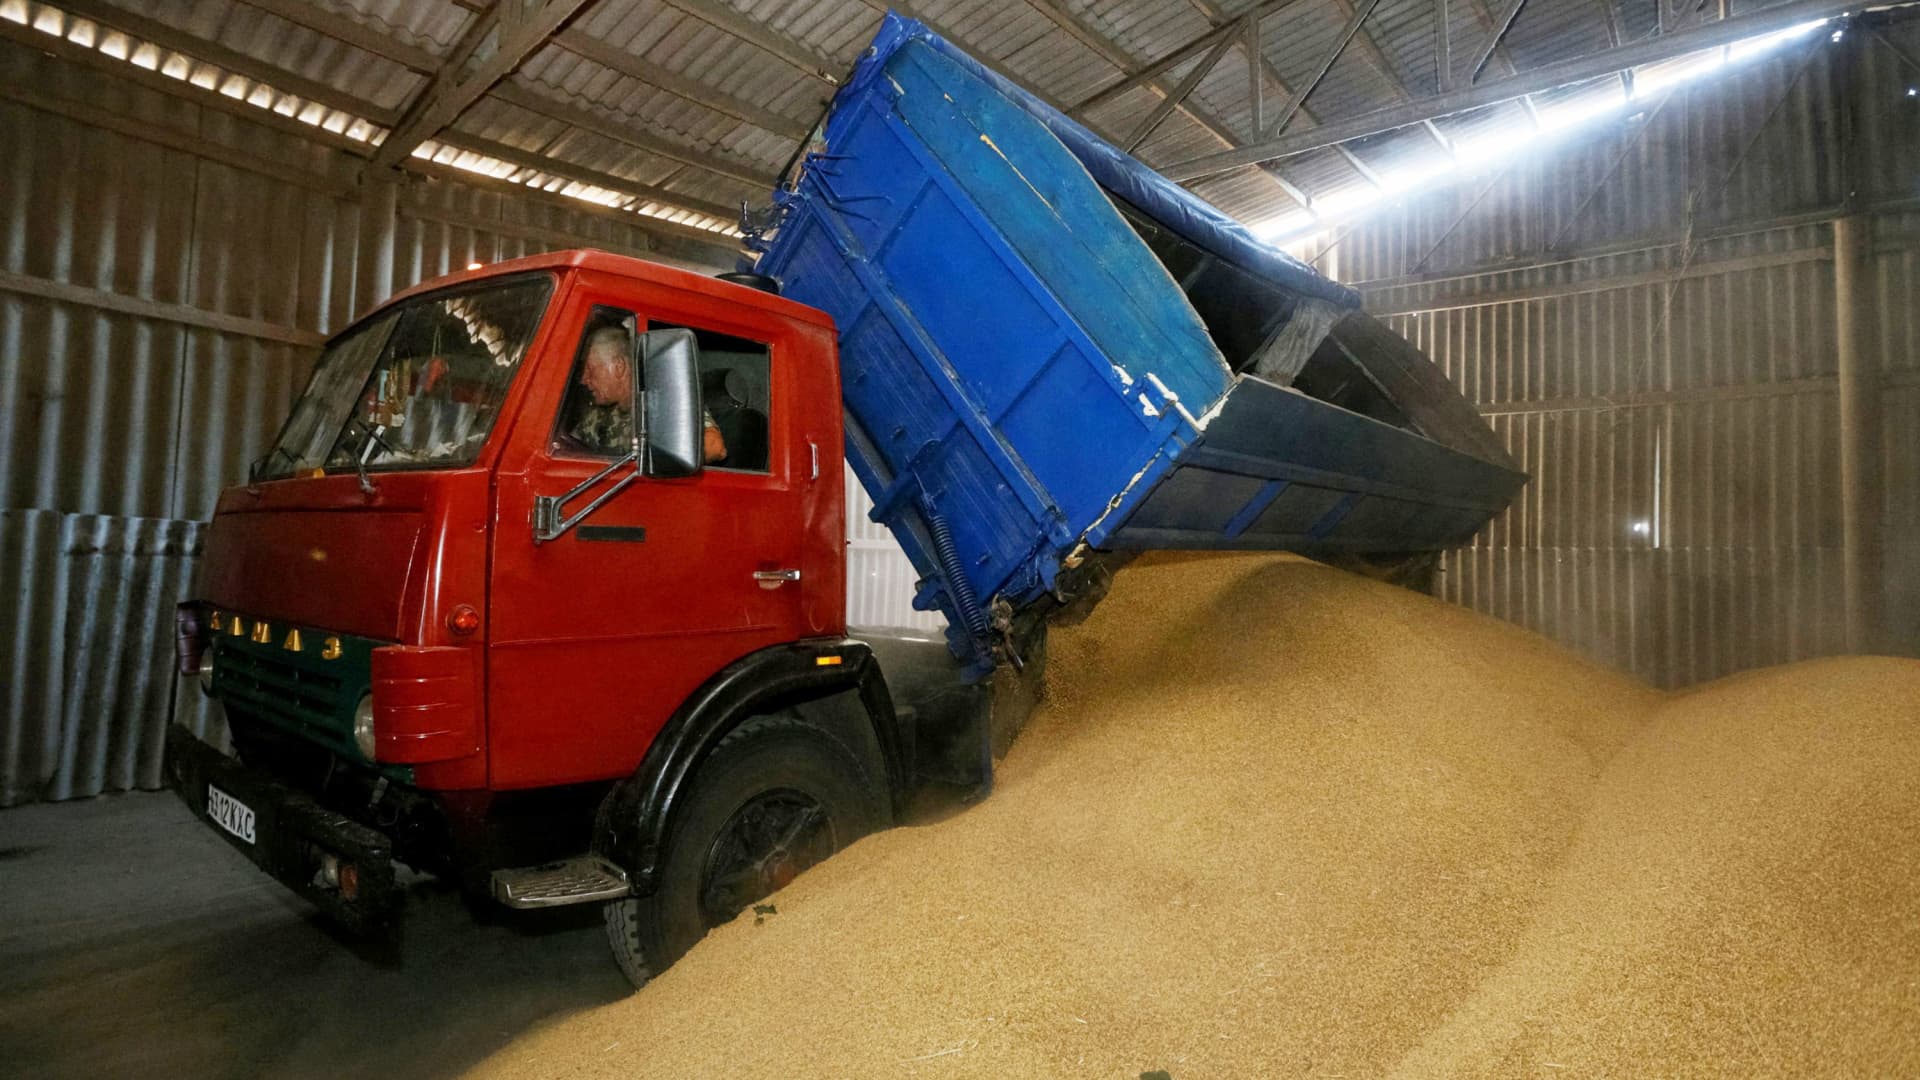 Ministrul adjunct de externe a declarat că exporturile de cereale ale Ucrainei prin Polonia și România se confruntă cu blocaje